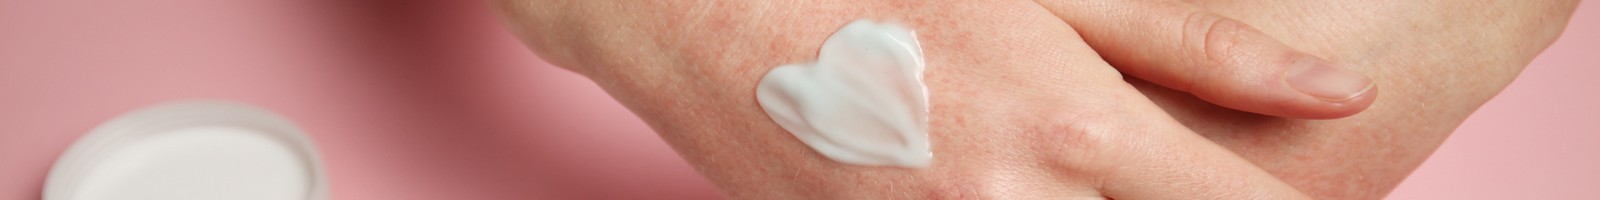 Traitement du Vitiligo : la crème Opzelura remboursée par l’Assurance maladie